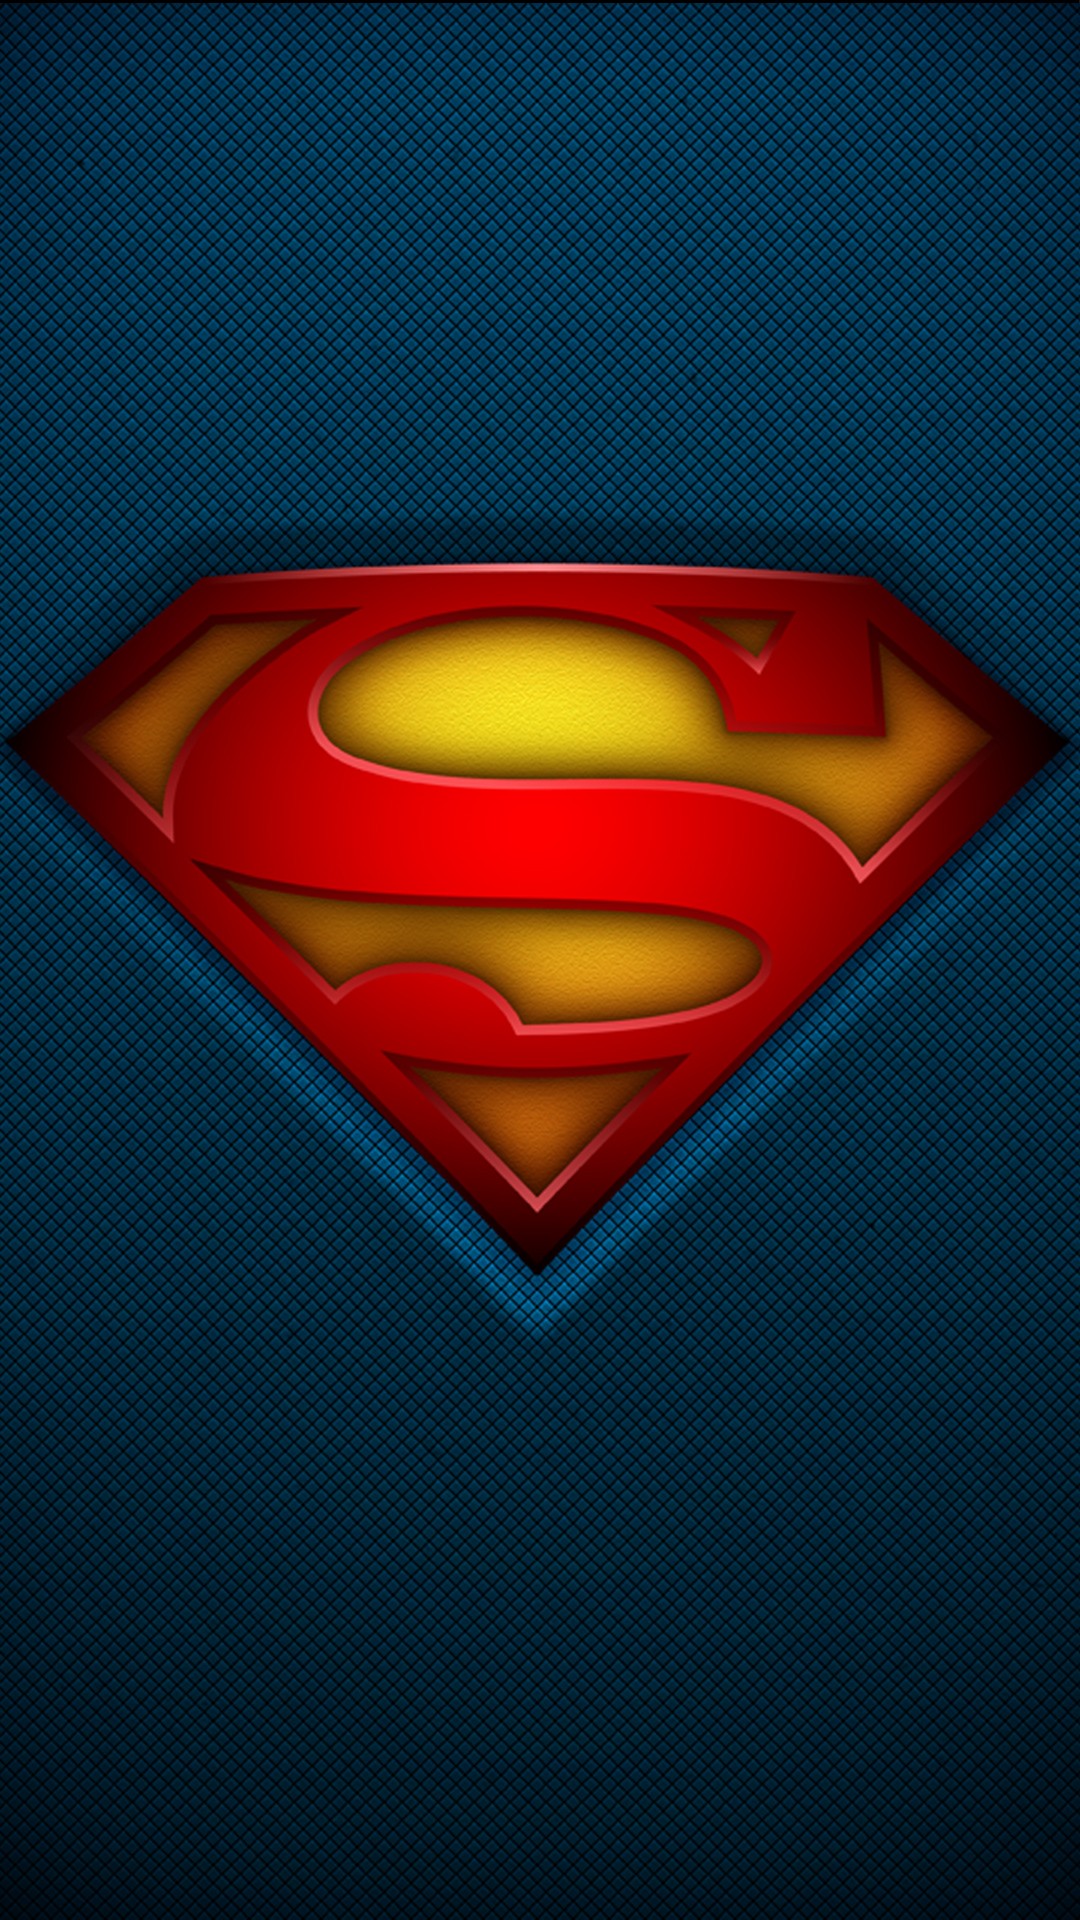 Superhero Wallpaper 11 - Superman Hd Wallpapers 1080p Phone - 1080x1920  Wallpaper 